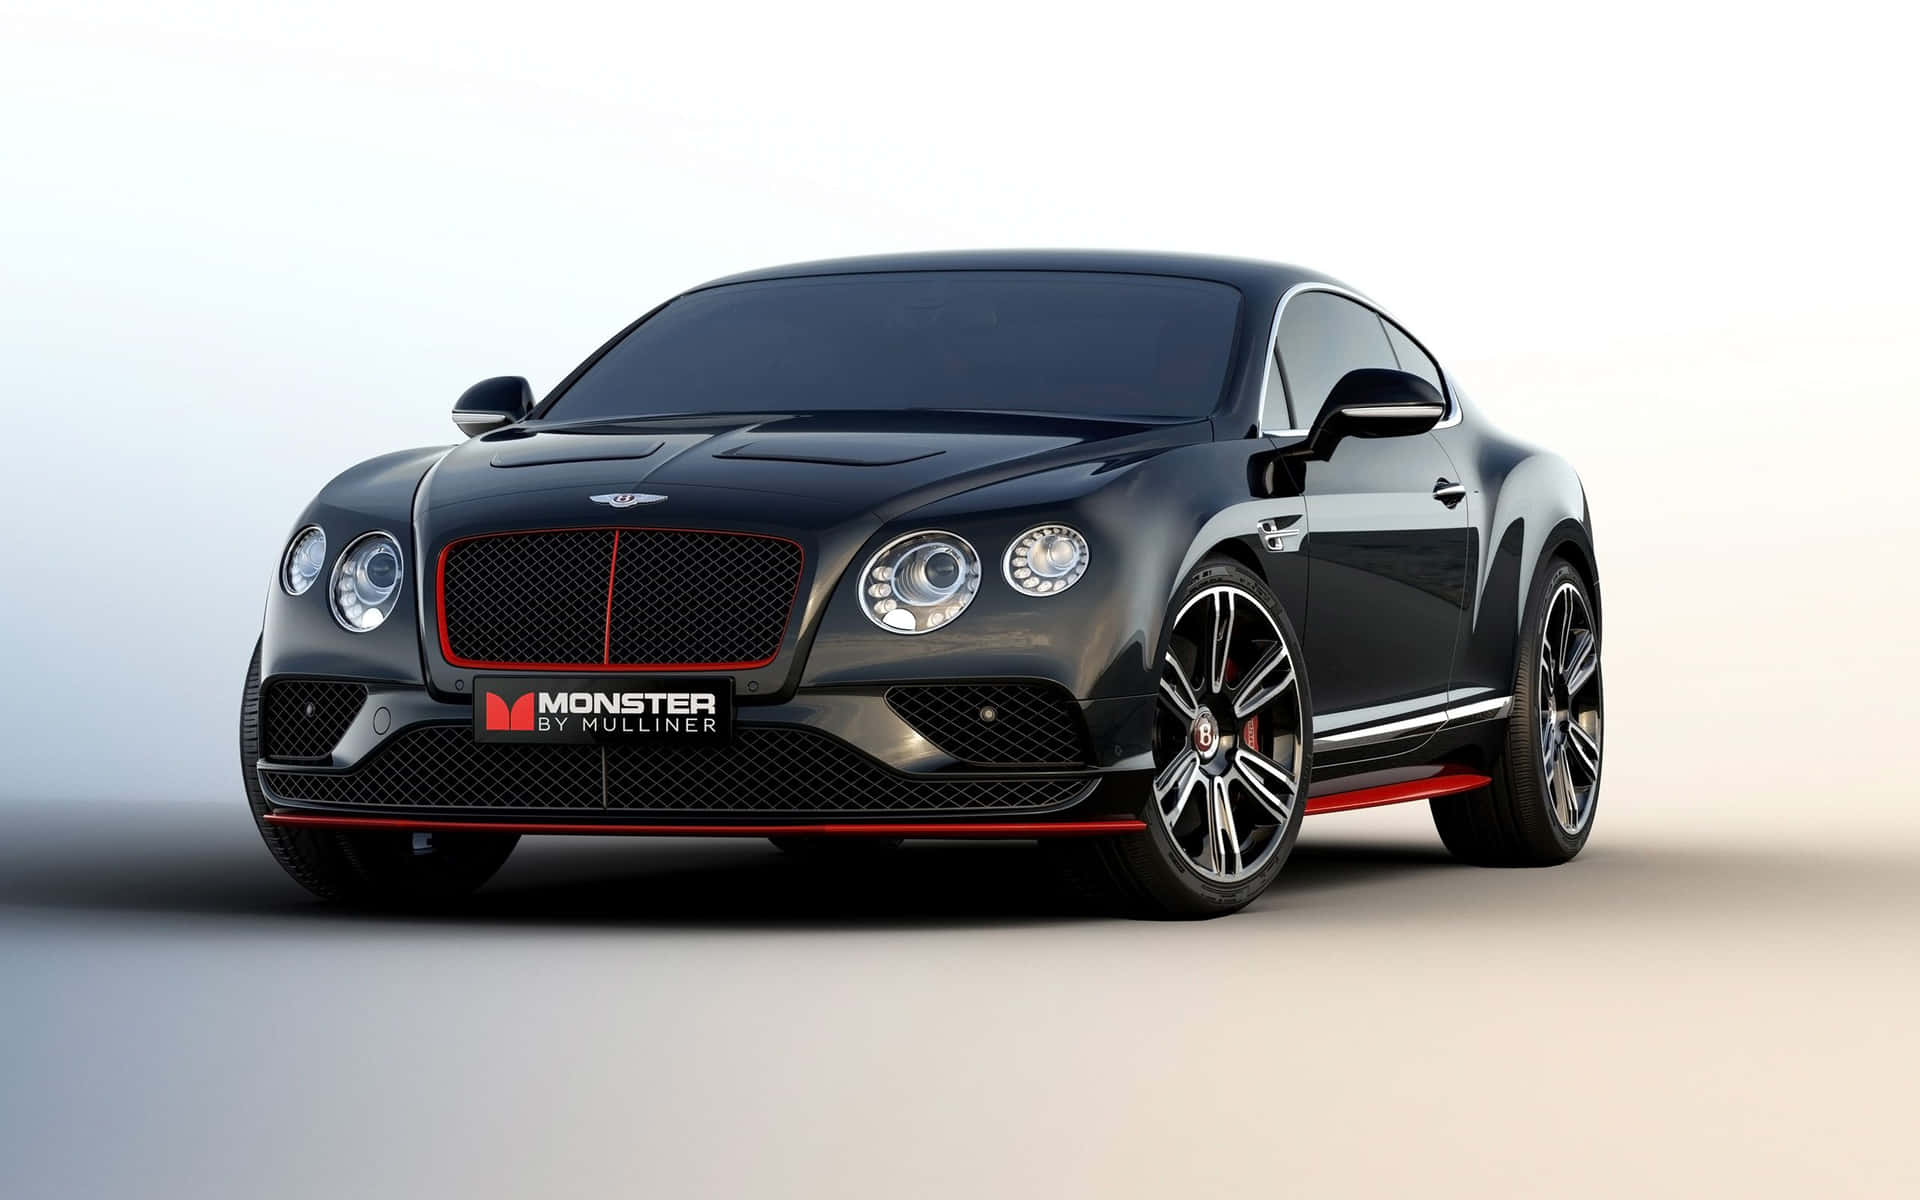 Get Behind the Wheel of the World's Best Bentley